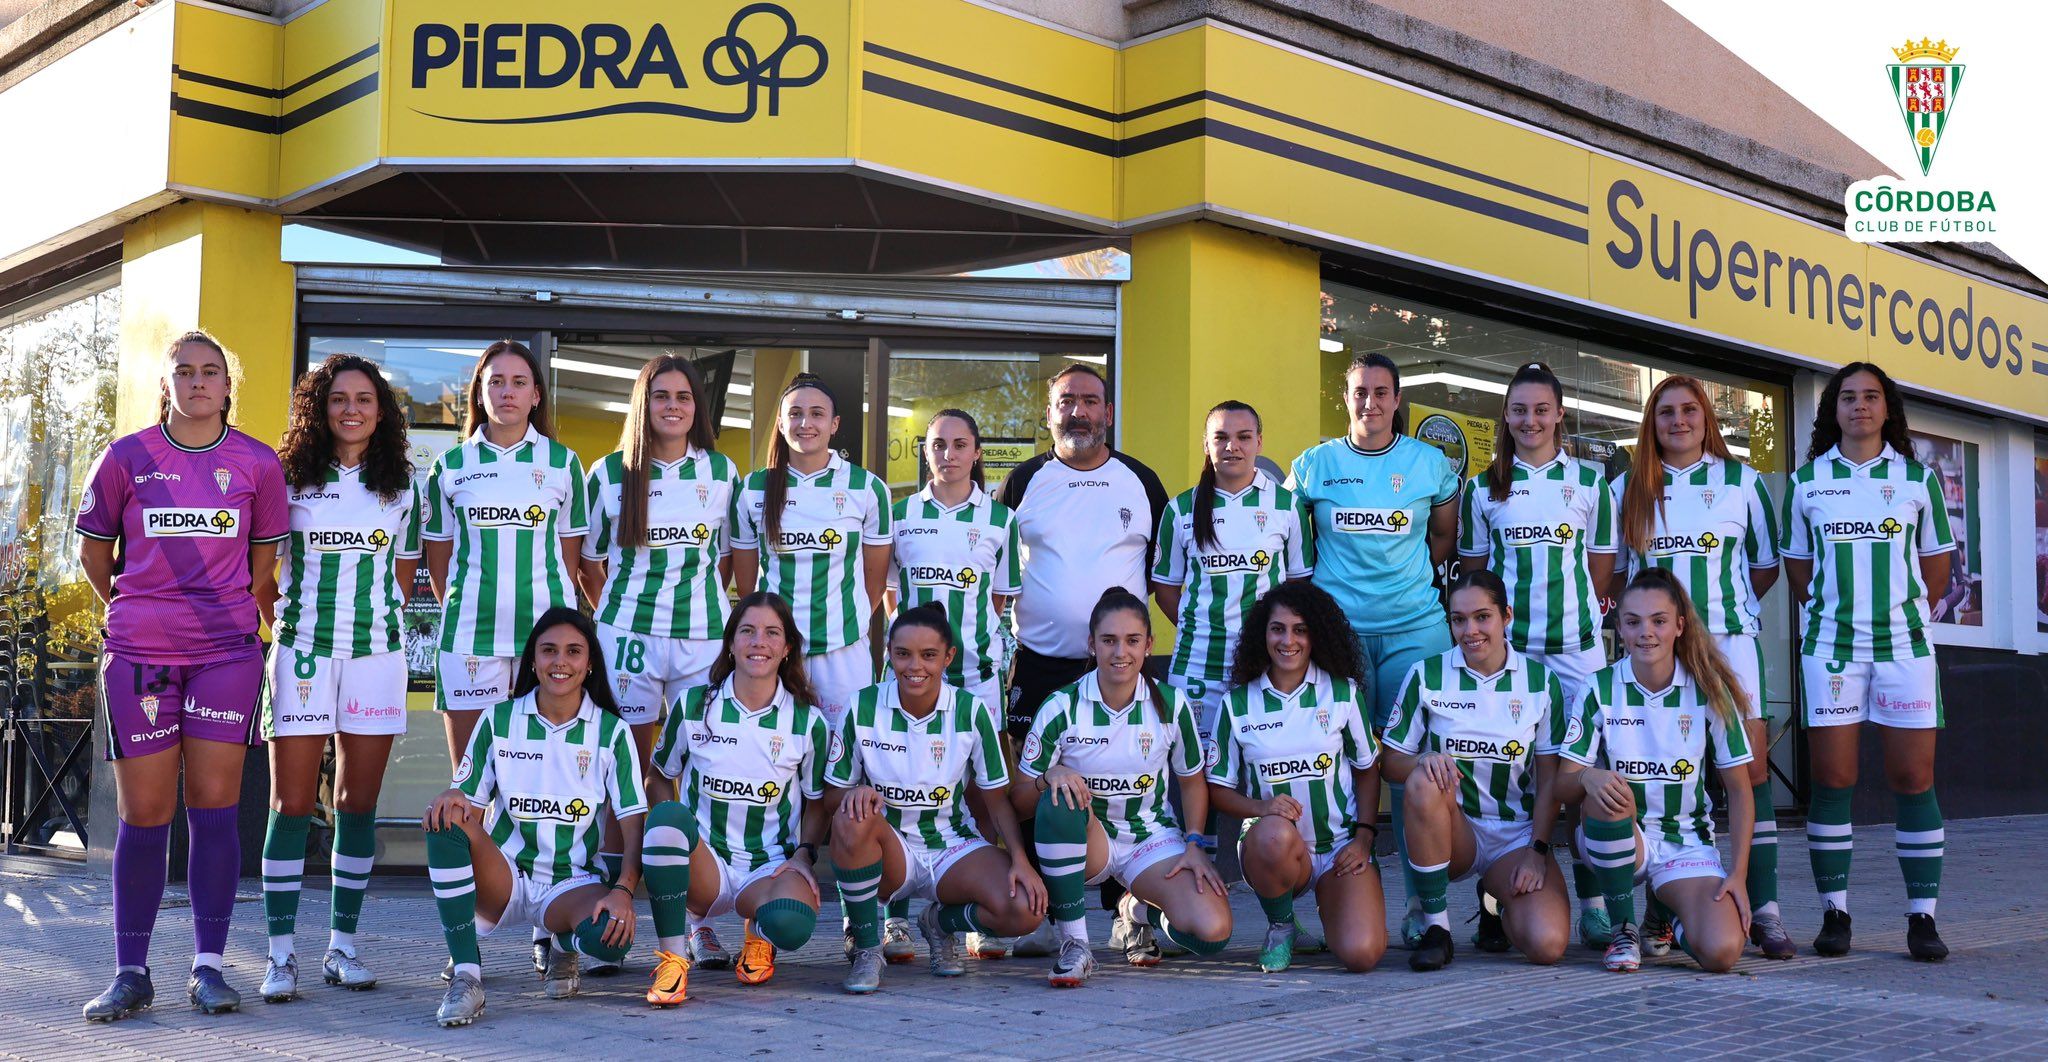 El Córdoba CF Femenino, posando en Supermercados Piedra